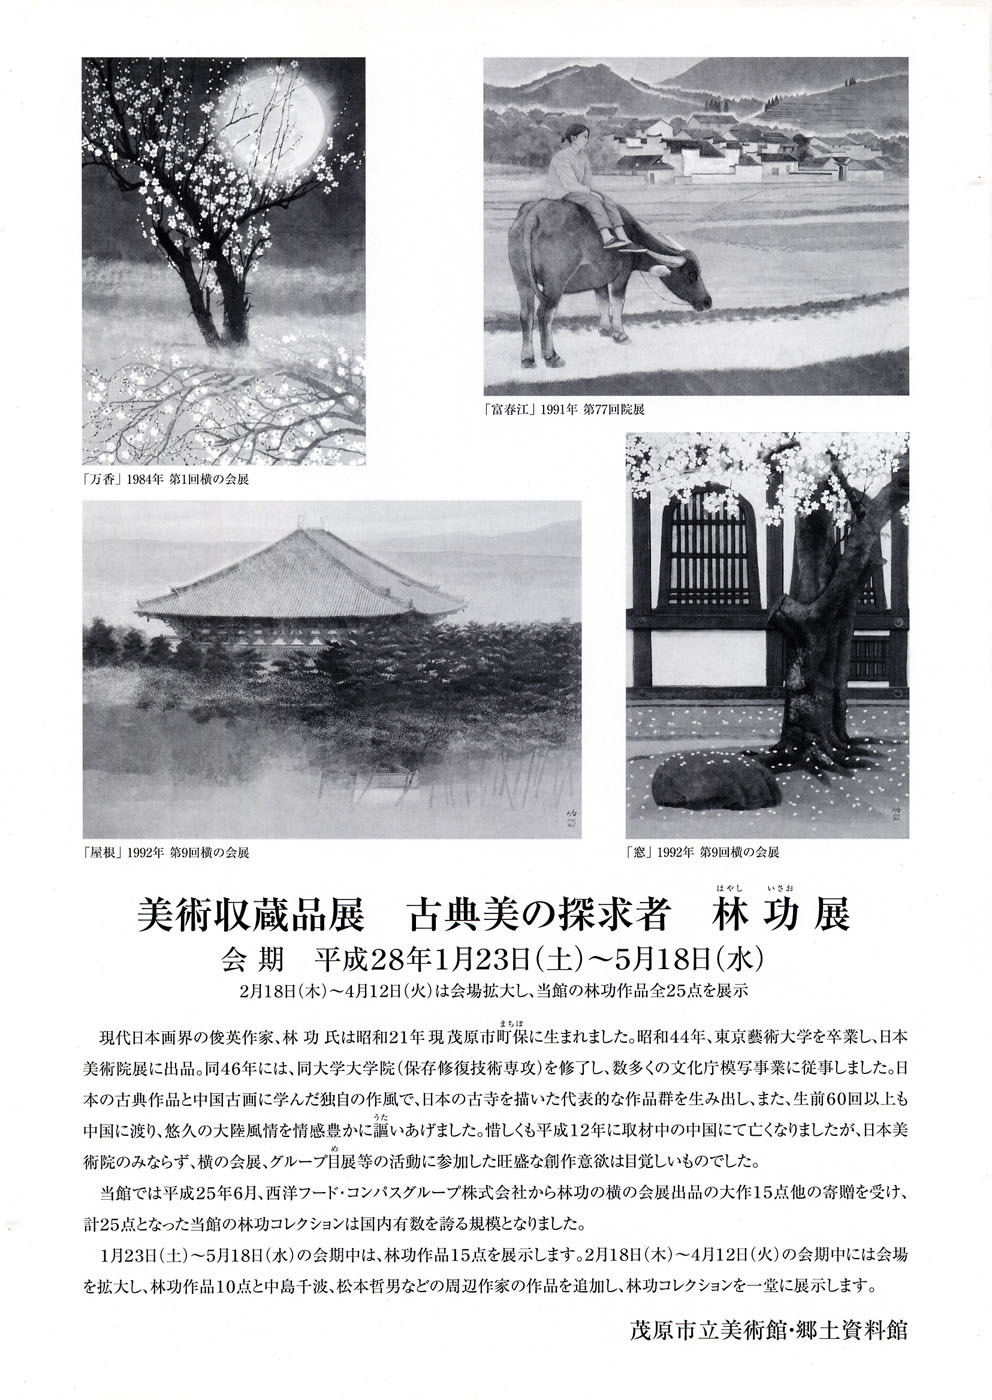 美術収蔵品展　林功　日本画展のチラシ裏面の画像です。日本のお寺の桜の風景作品などを掲載しています。